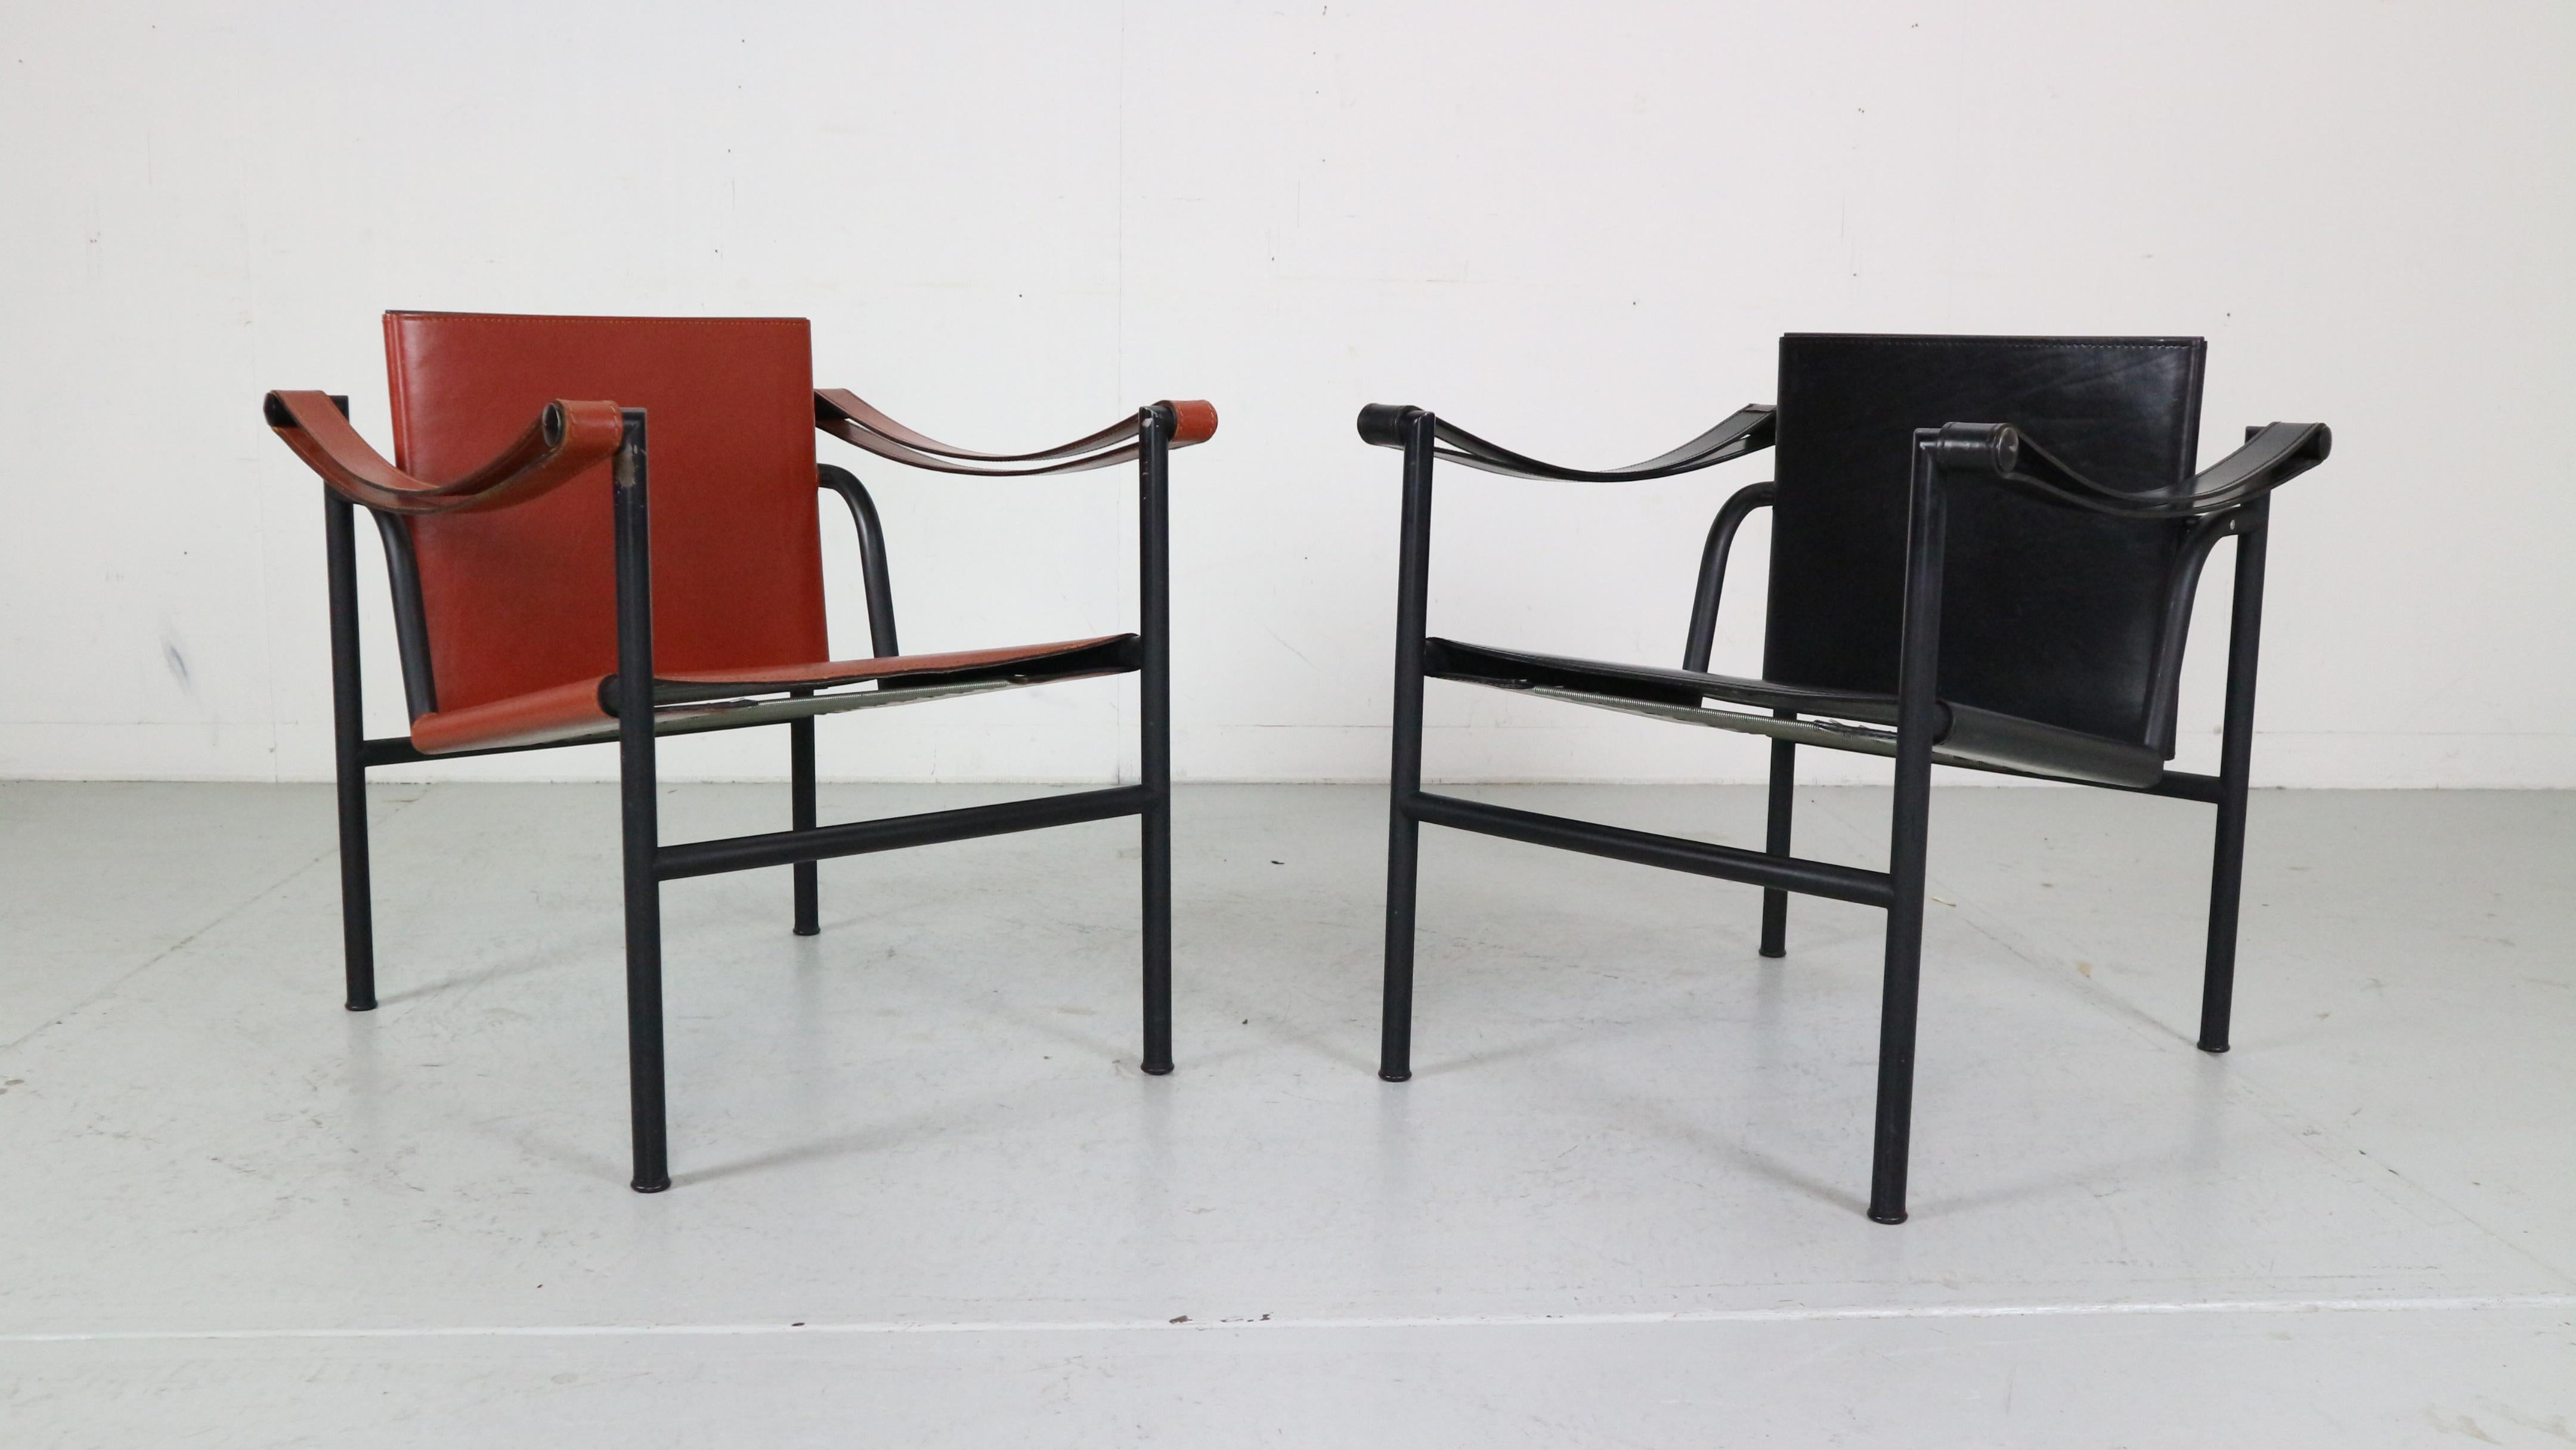 Ensemble de 2 fauteuils dessinés par Le Corbusier et fabriqués pour Cassina, célèbre manufacture italienne de meubles dans les années 1970.

Les deux chaises sont des originaux signés, en édition limitée et accompagnées d'une documentation.
Numéro